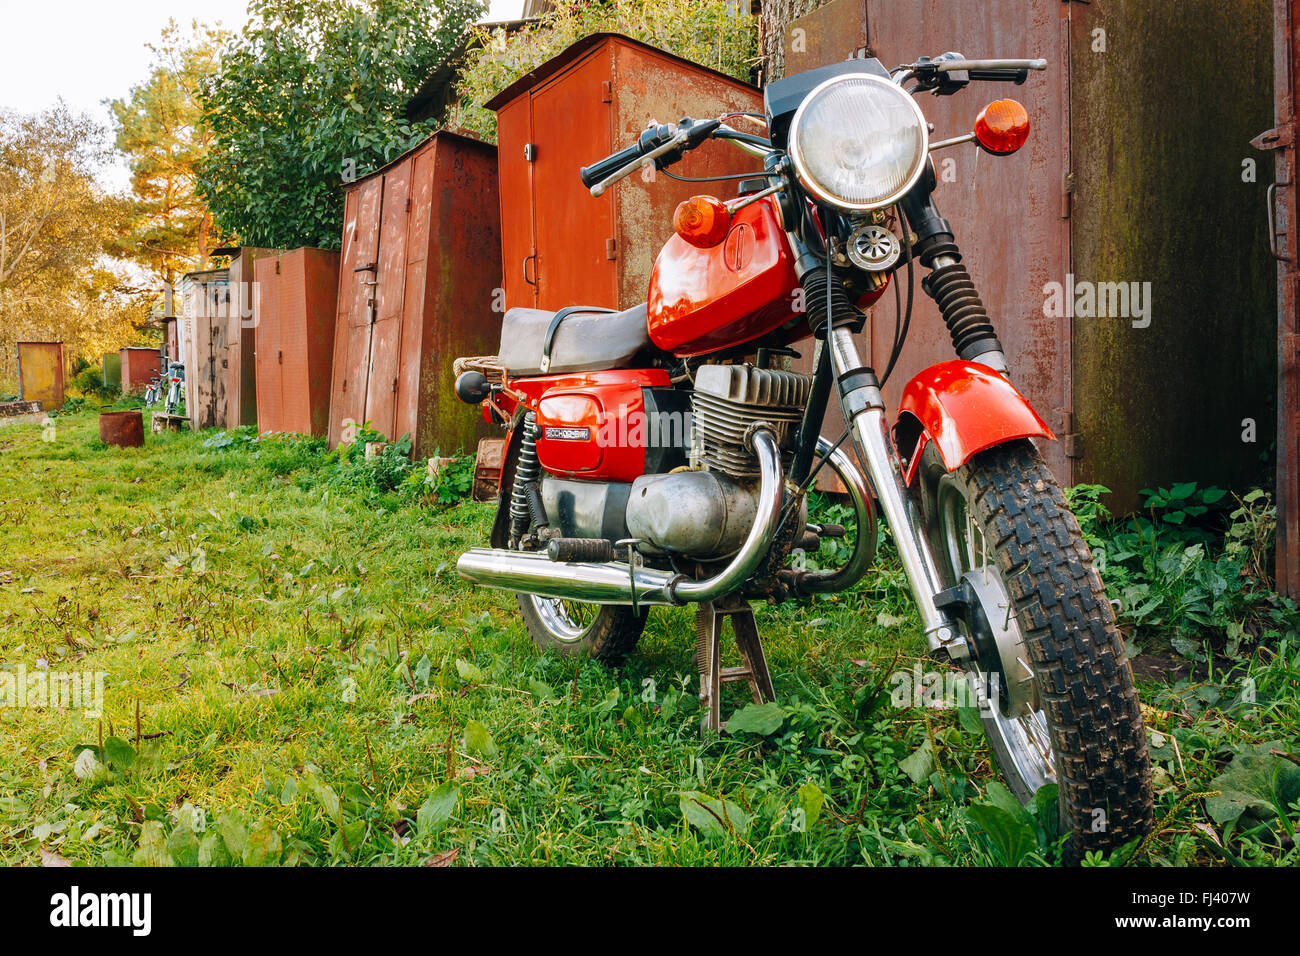 Viejo Rojo Soviética Rusa Voshod motocicleta estacionada sobre la hierba verde. Este motocicletas producidas en la planta de Degtyarev ciudad rusa Foto de stock